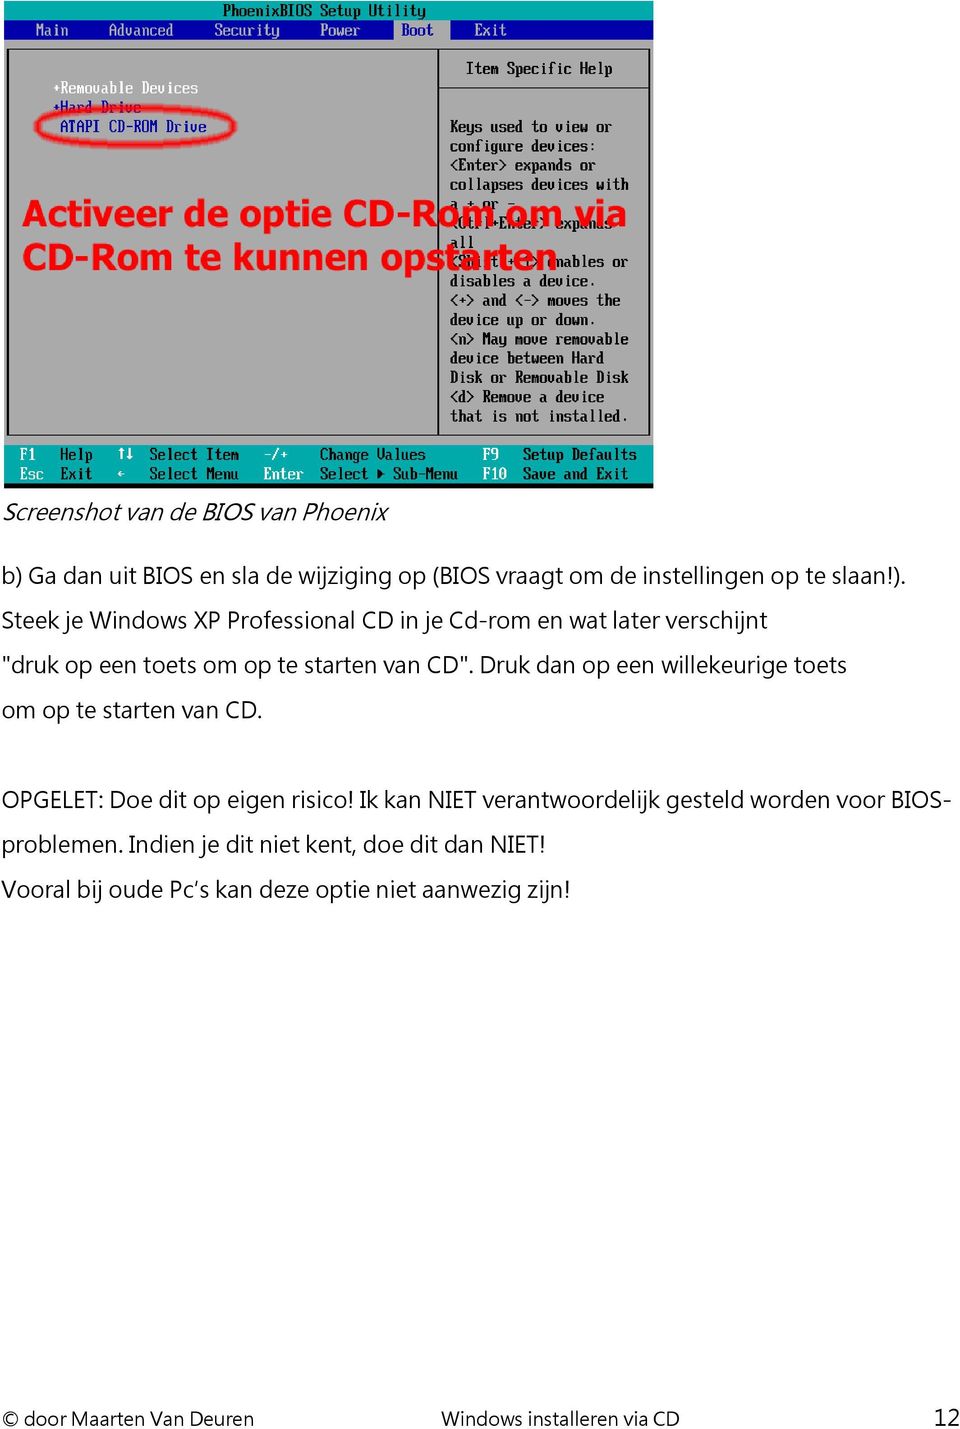 Steek je Windows XP Professional CD in je Cd-rom en wat later verschijnt "druk op een toets om op te starten van CD".